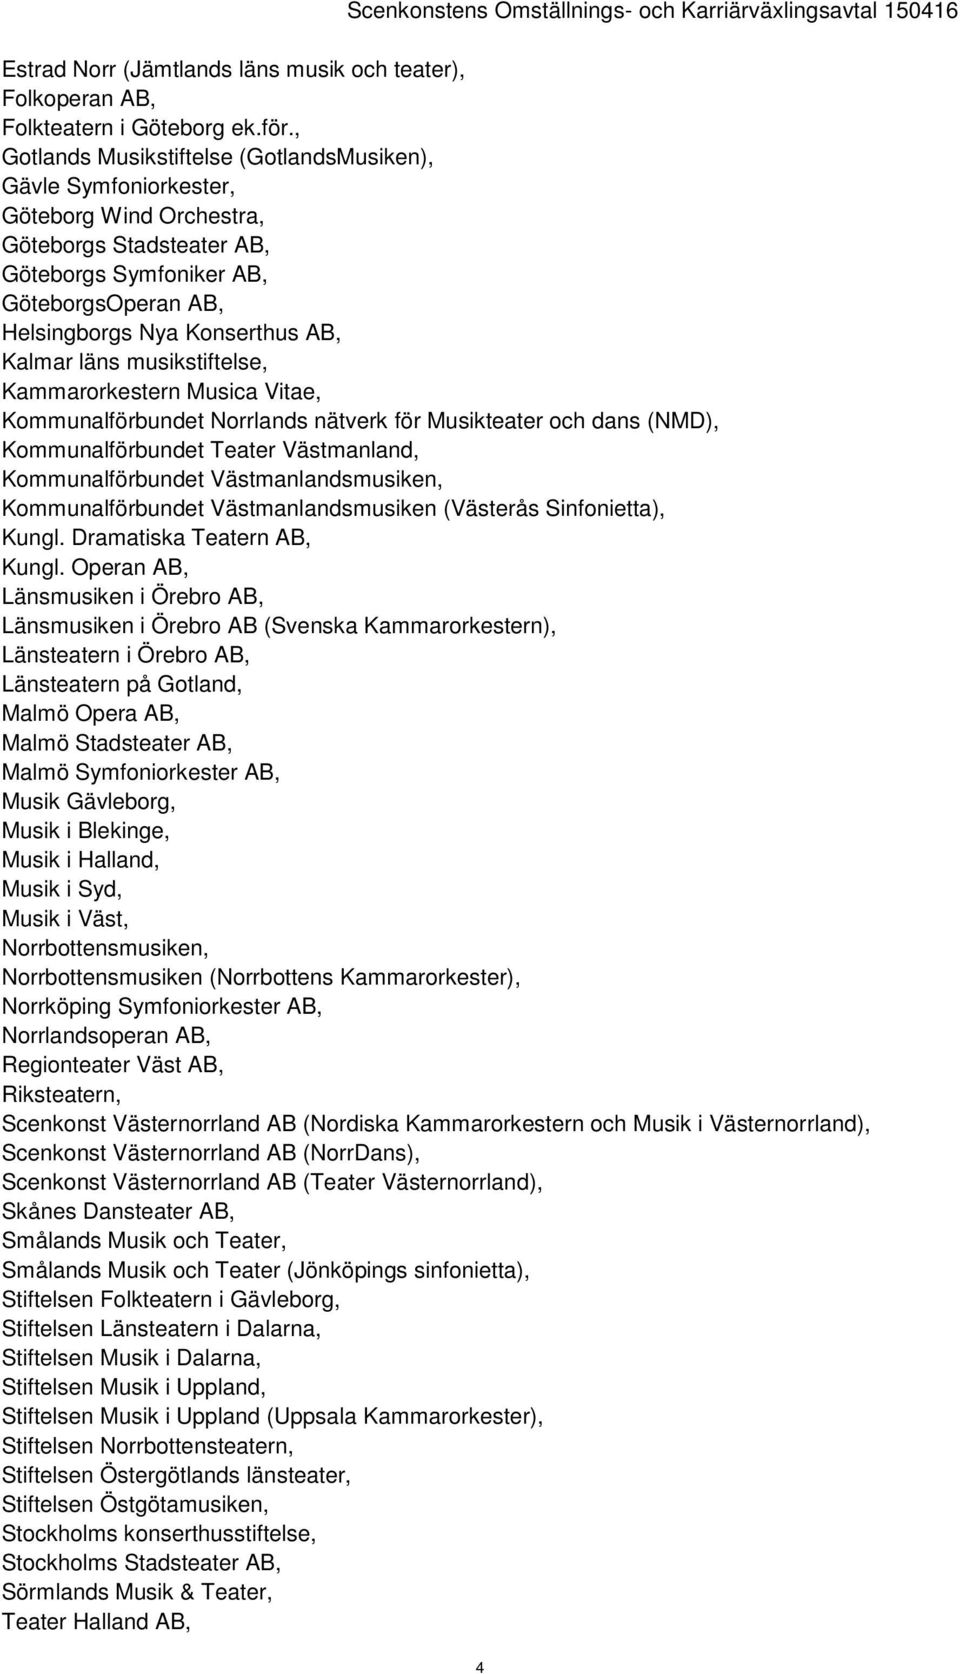 Kalmar läns musikstiftelse, Kammarorkestern Musica Vitae, Kommunalförbundet Norrlands nätverk för Musikteater och dans (NMD), Kommunalförbundet Teater Västmanland, Kommunalförbundet